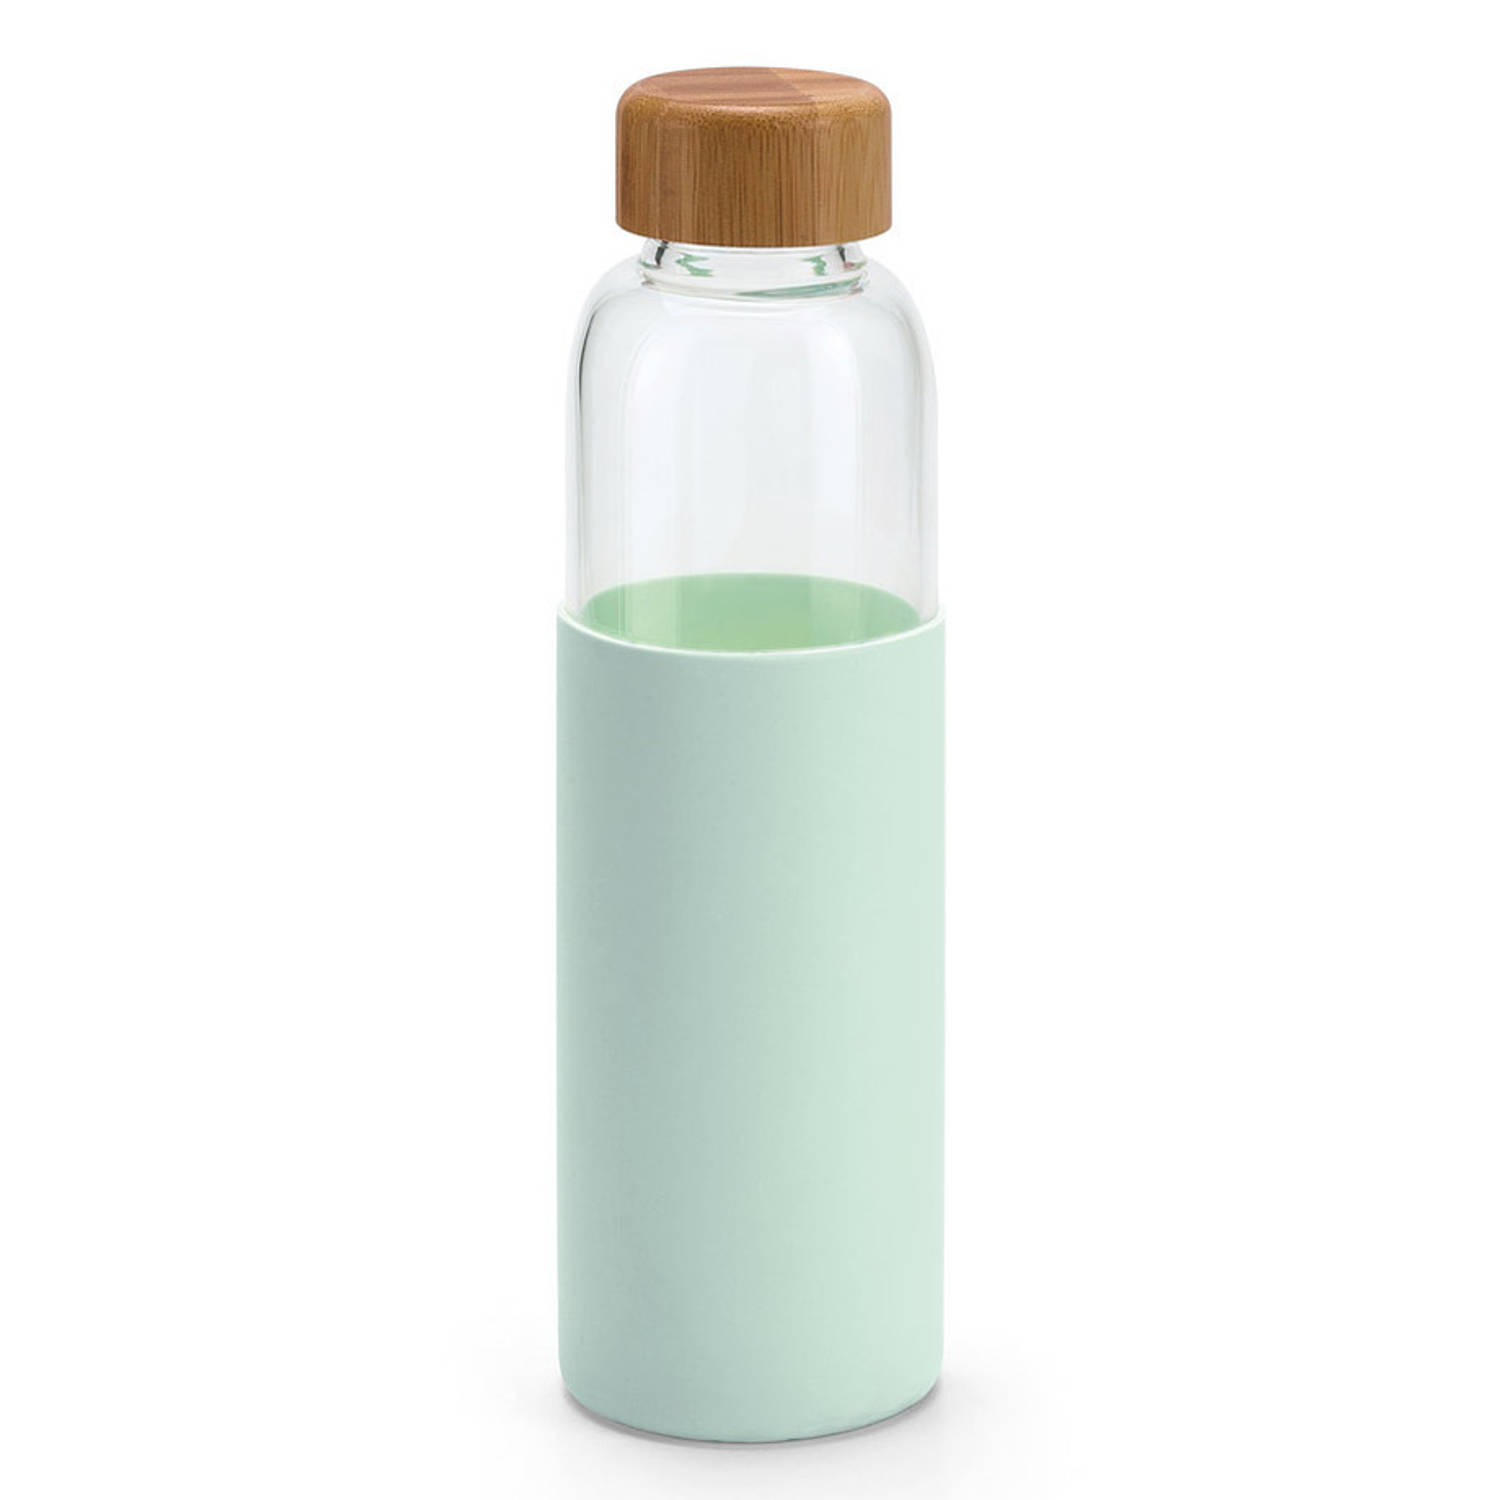 Oorzaak Berg Vesuvius wonder 2x Stuks glazen waterfles/drinkfles met mint groene siliconen bescherm hoes  600 ml - Drinkflessen | Blokker